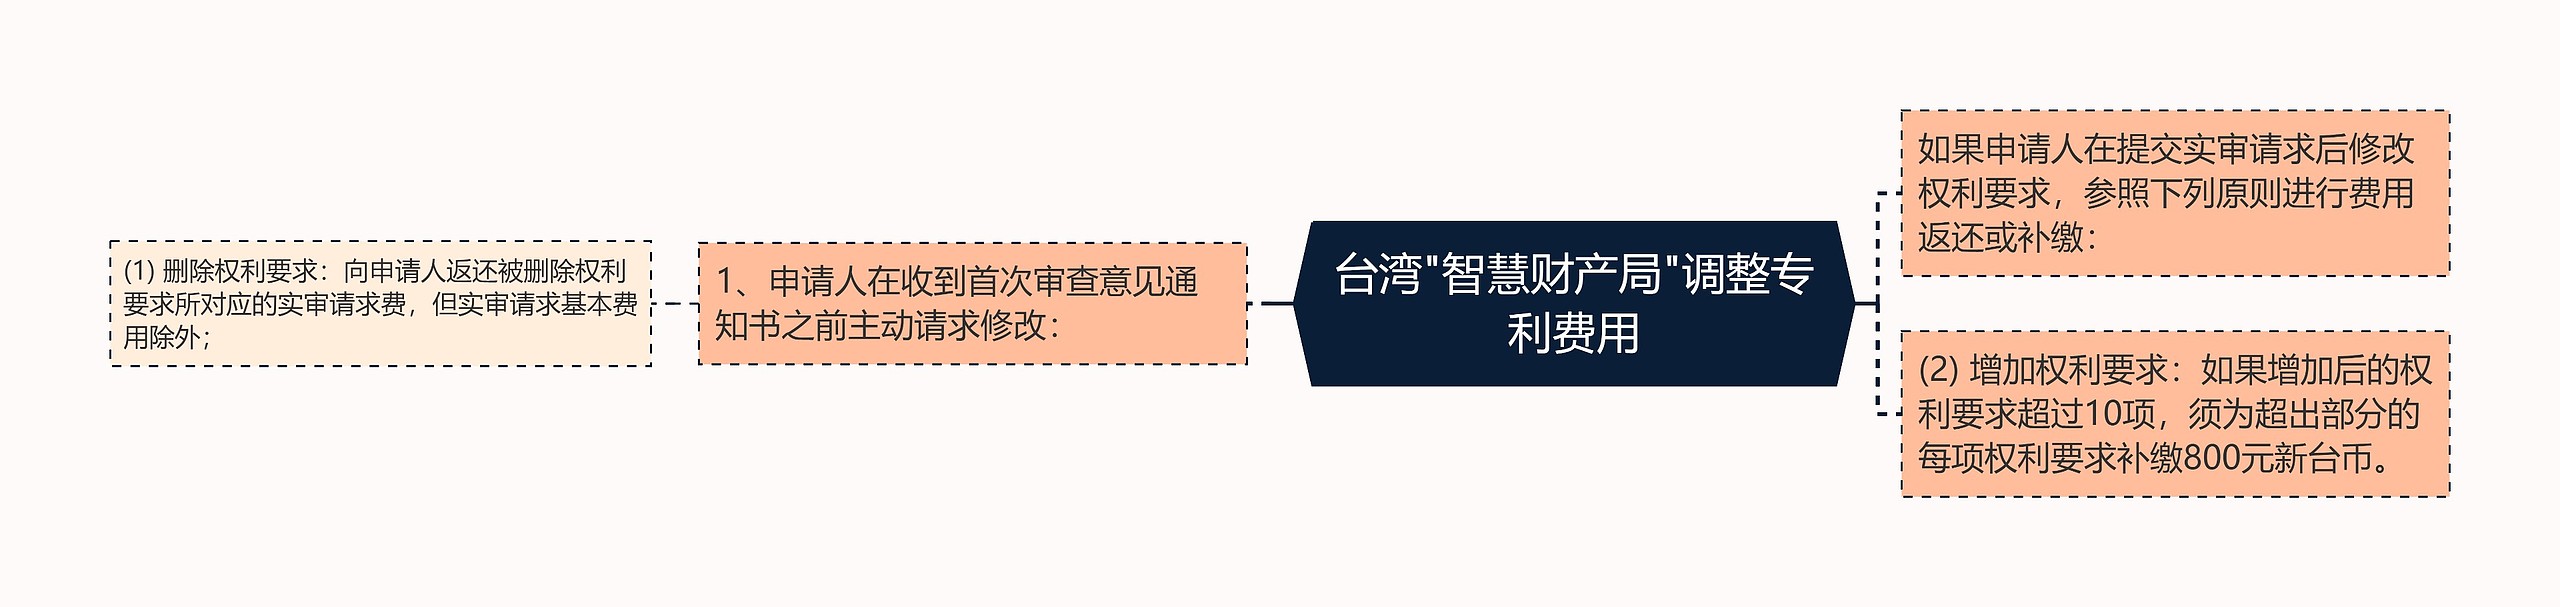 台湾"智慧财产局"调整专利费用